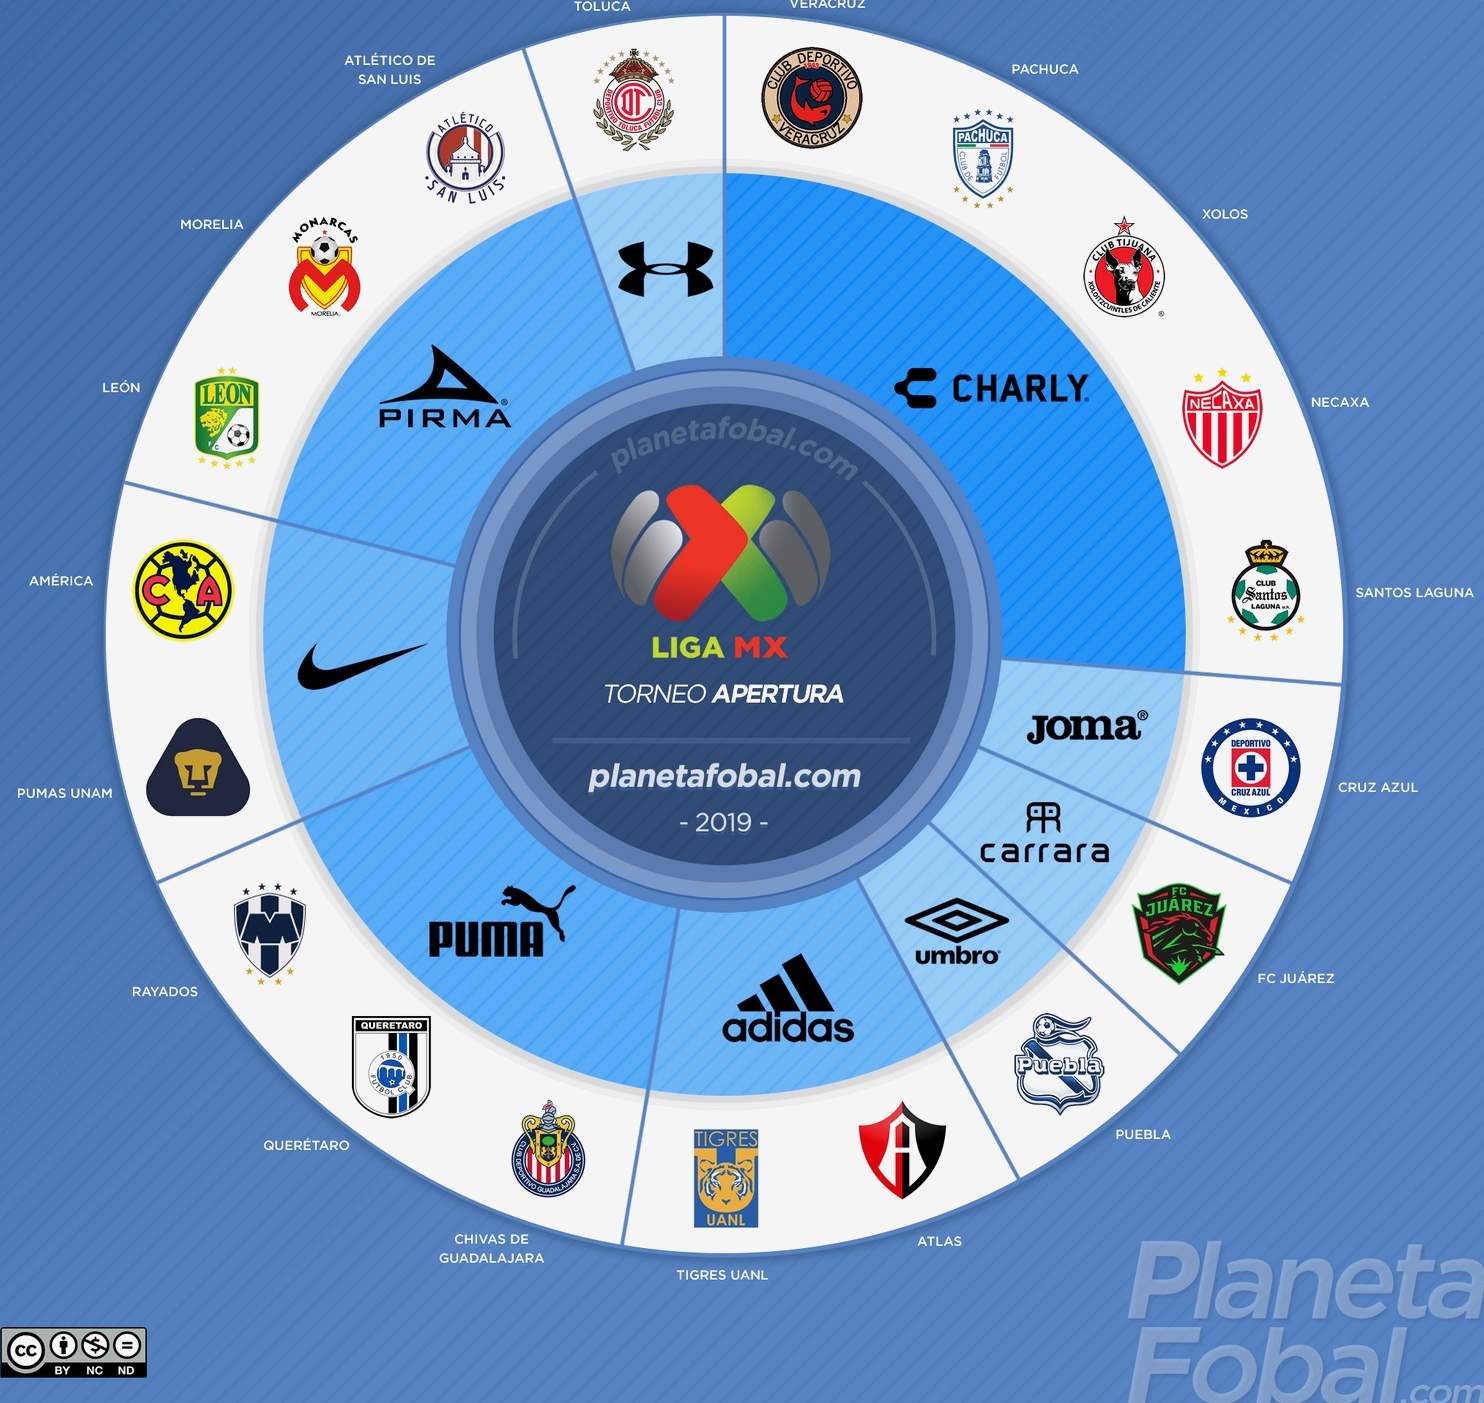 FanPlastic Liga MX Soccer Table Clocks Any Team Colors Available/RELOJES DE LA Tabla DE FÚTBOL Liga MX CUALQUIER Color DE EQUIPO DISPONIBLE 